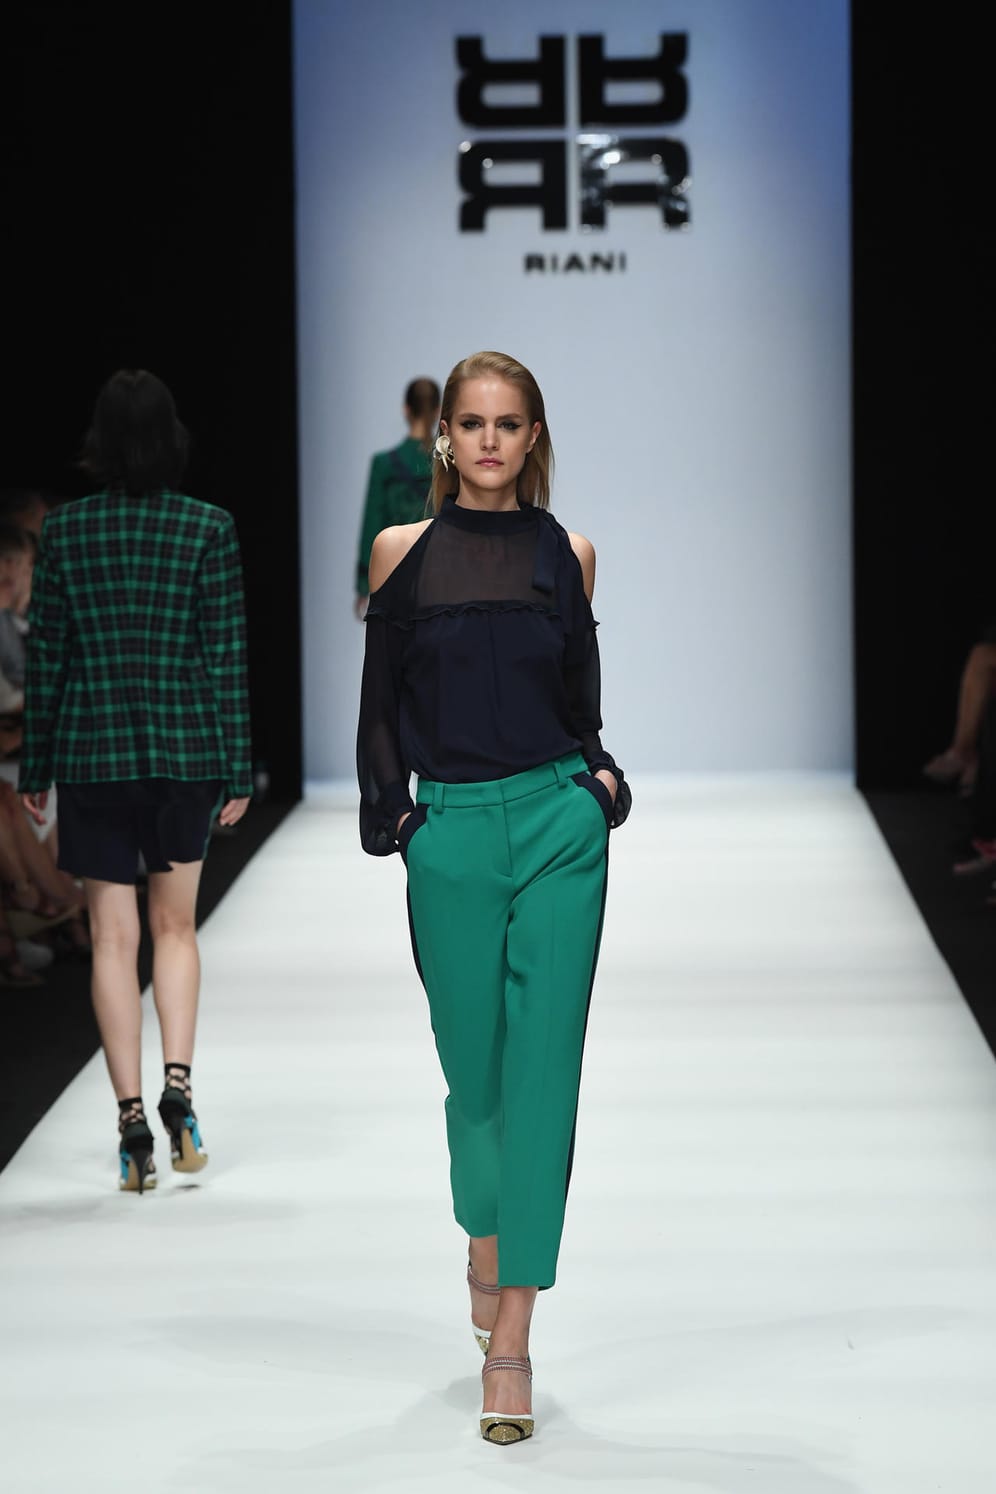 Einer von vielen Looks: Ein Model präsentiert ein Outfit aus der Spring/Summer-Kollektion 2019 von Riani.